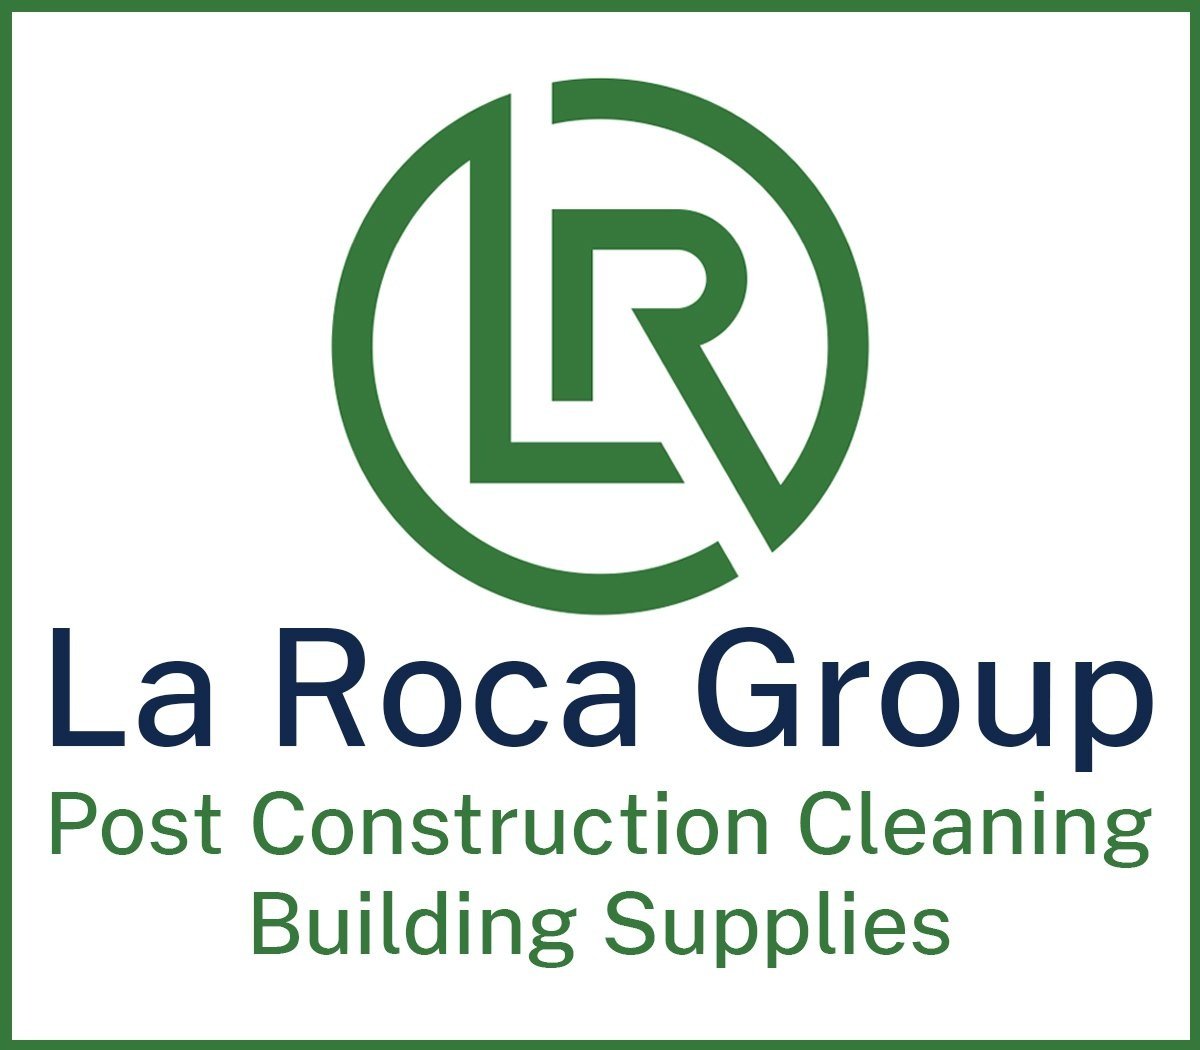 La Roca Group